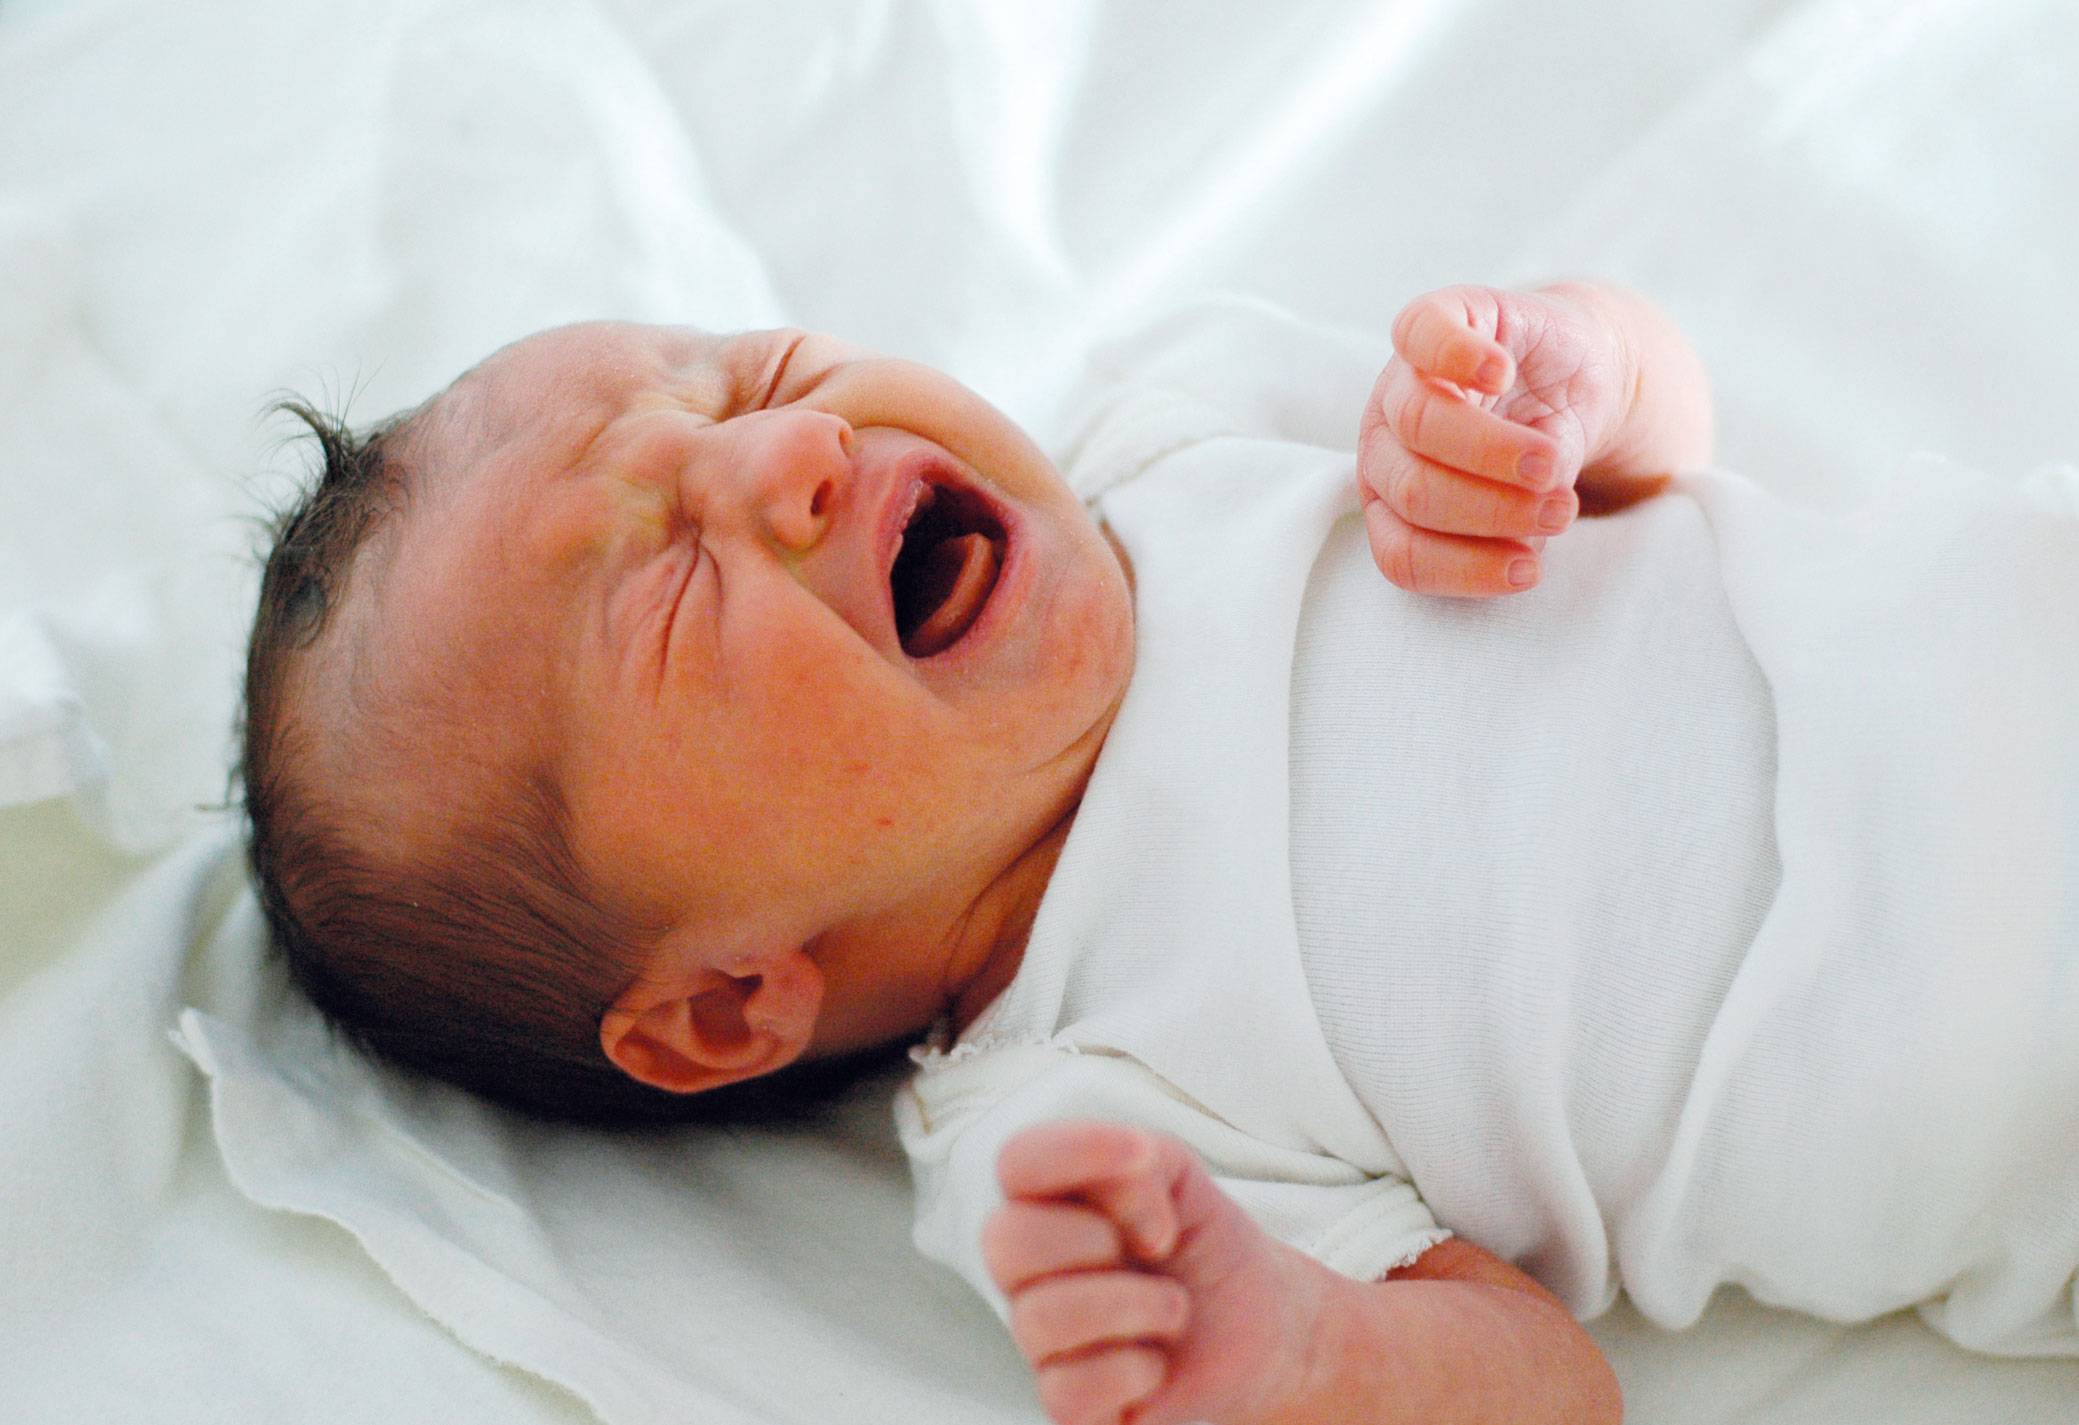 Как успокоить новорожденного: действенные способы, что делать, если истерика, плачь без причины